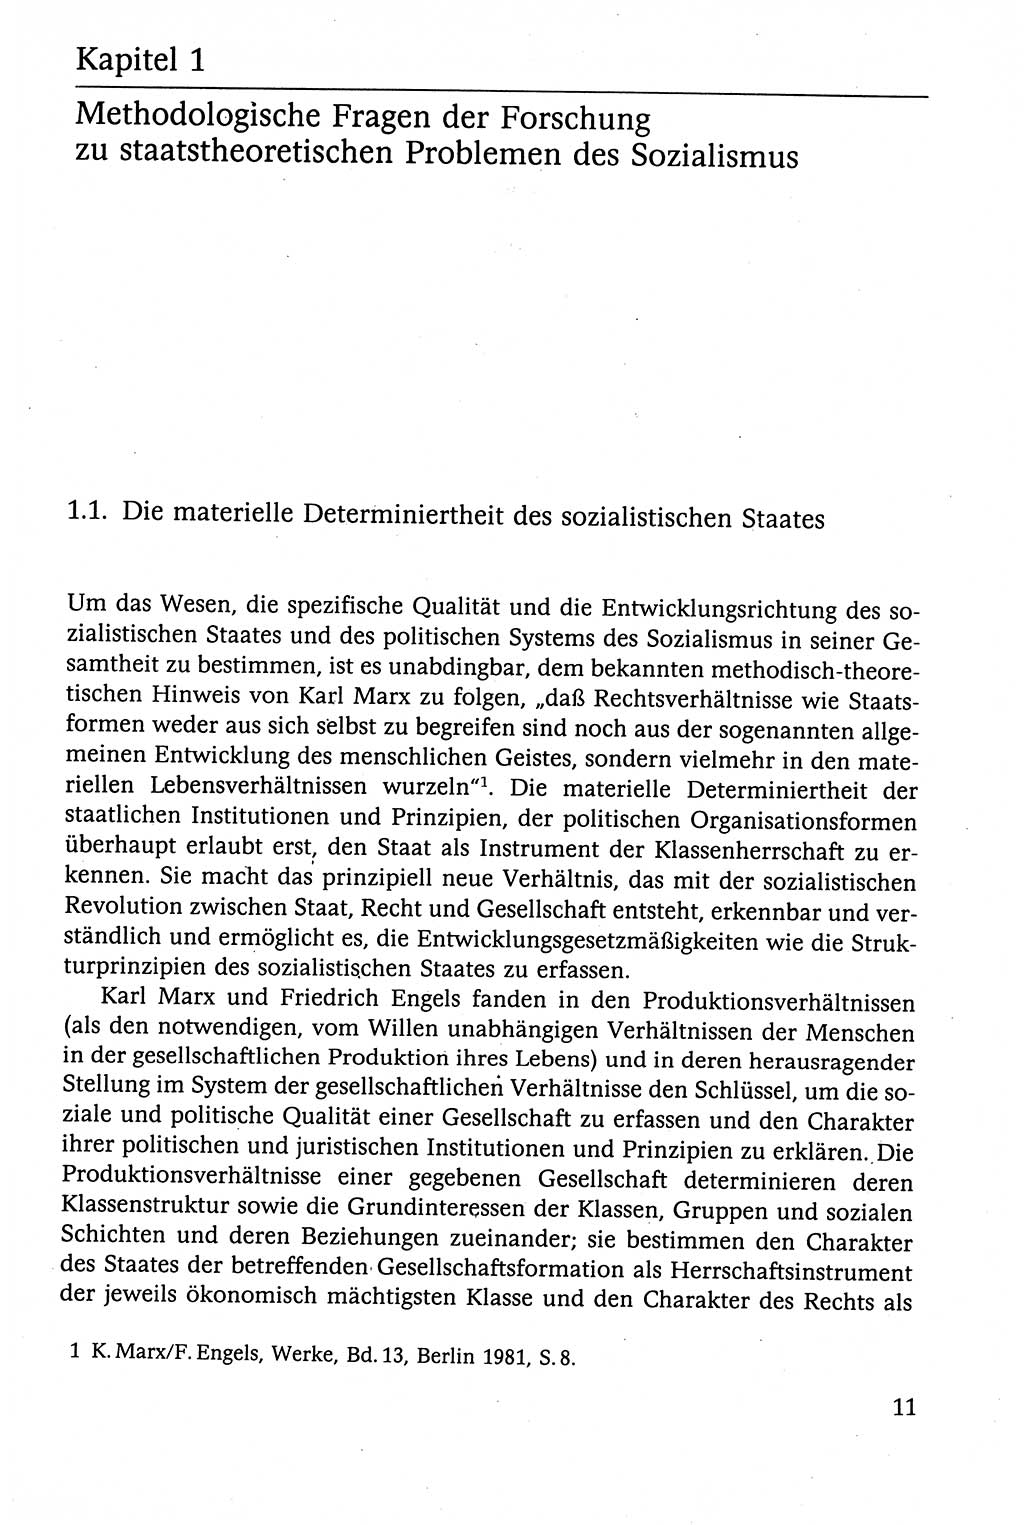 Der Staat im politischen System der DDR (Deutsche Demokratische Republik) 1986, Seite 11 (St. pol. Sys. DDR 1986, S. 11)